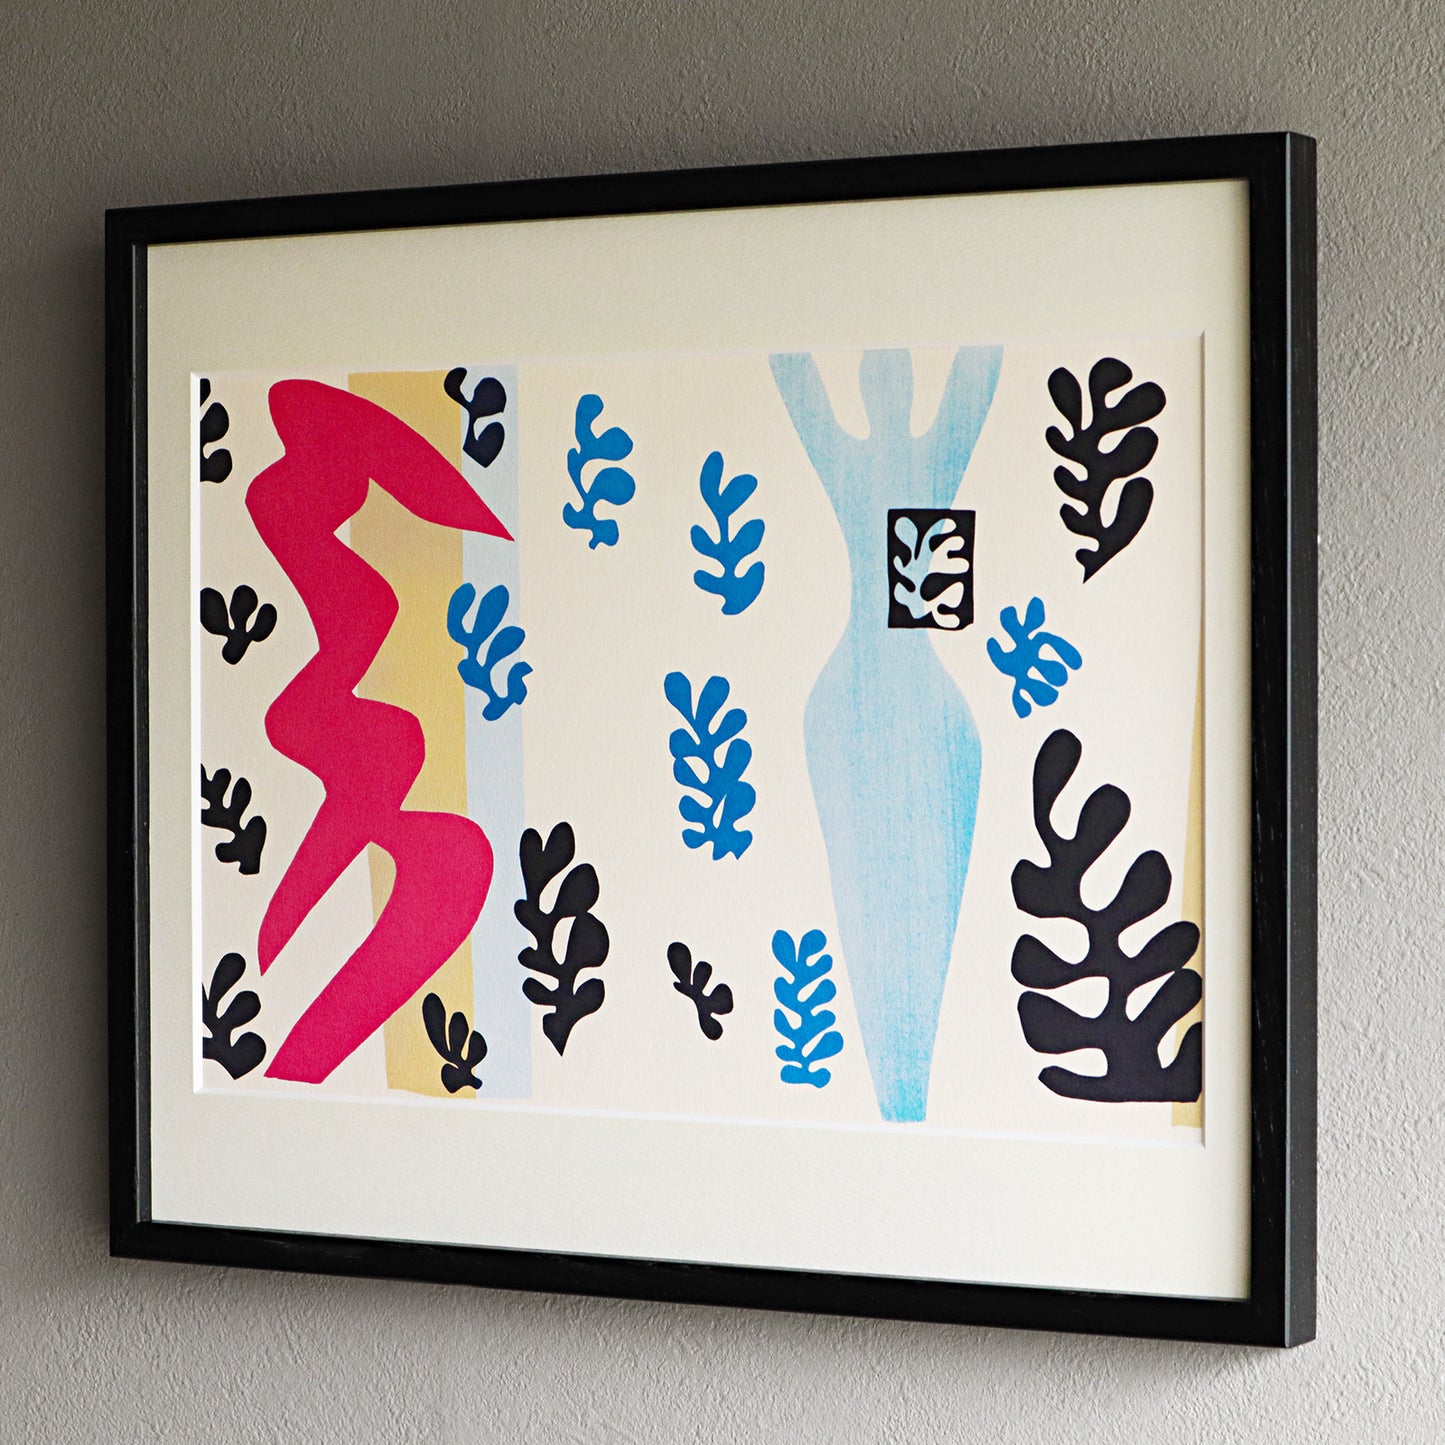 アンリ・マティス 版画集『ジャズ』「ナイフ投げ」アートポスター（フレーム付き） / Henri Matisse “Jazz /The Knife-Thrower” Art Frame